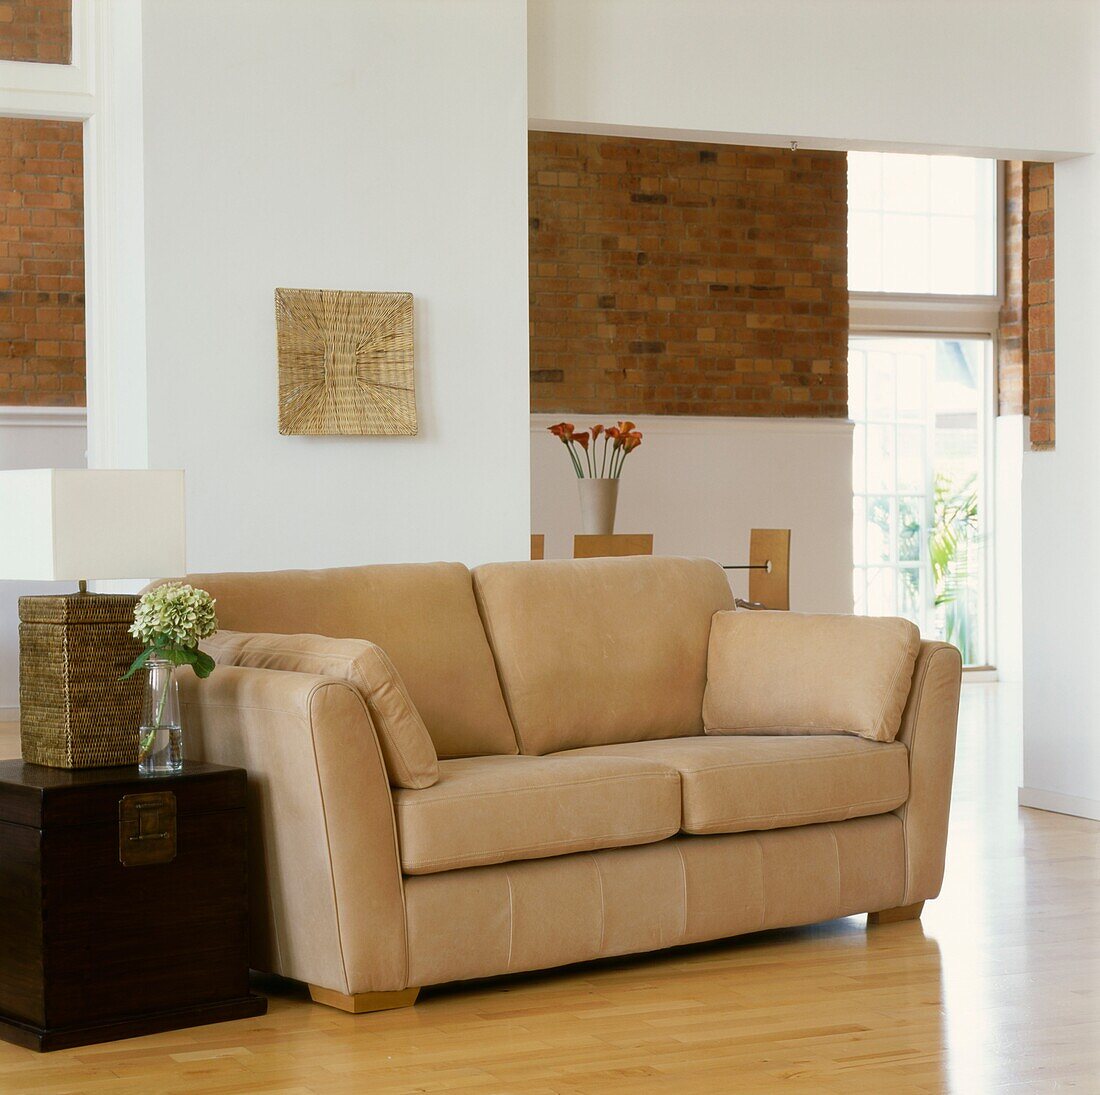 Beigefarbenes Sofa mit Truhe als Beistelltisch in einem Wohnzimmer mit freiliegender Backsteinwand